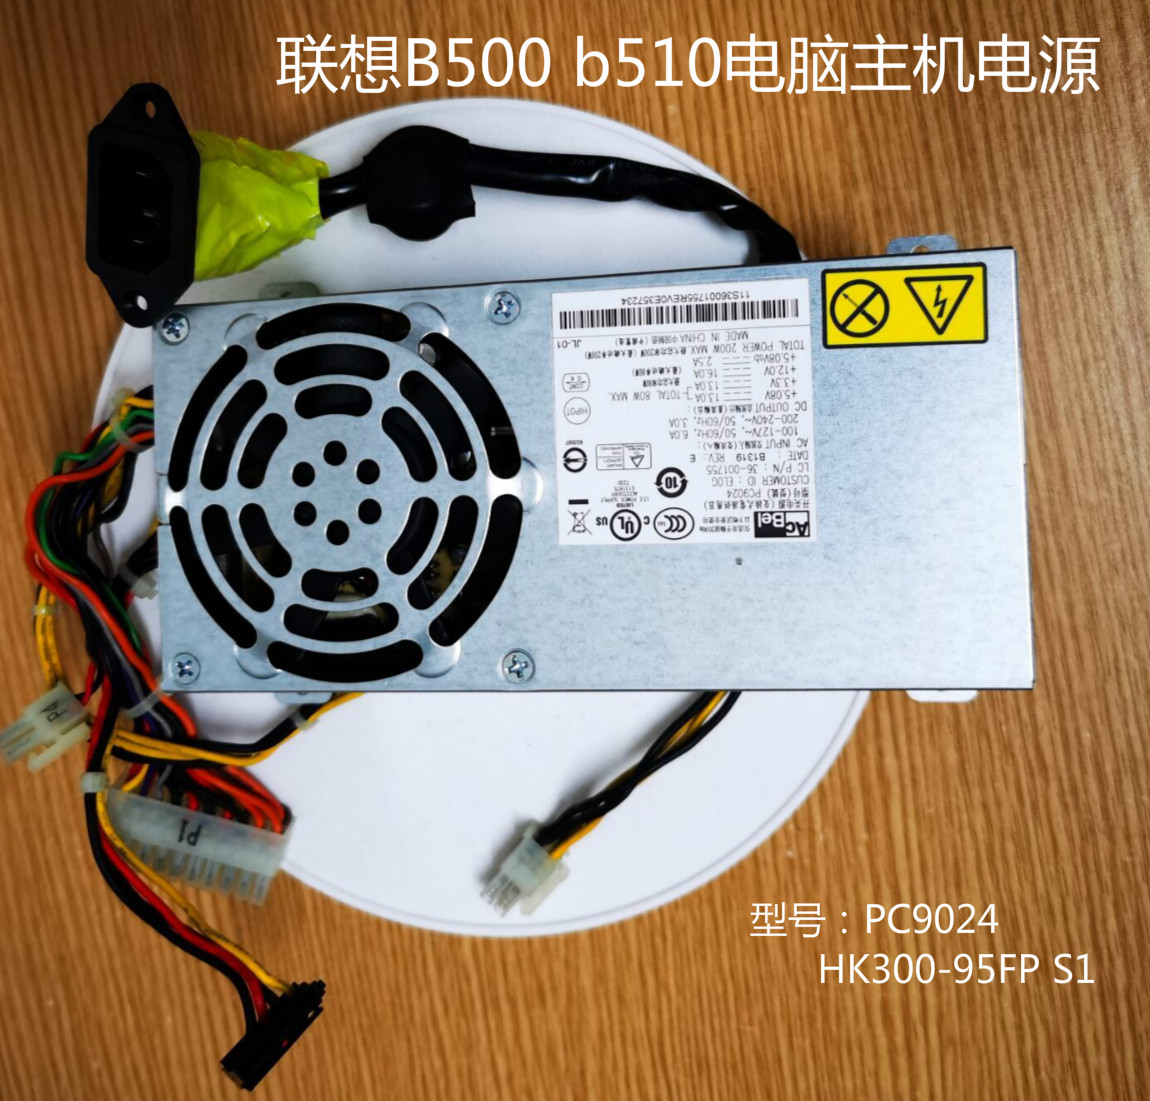 全新联想b500 B510 b50r1 b505一体机电源康舒PC9024 HK300-95FP 电脑硬件/显示器/电脑周边 电源 原图主图